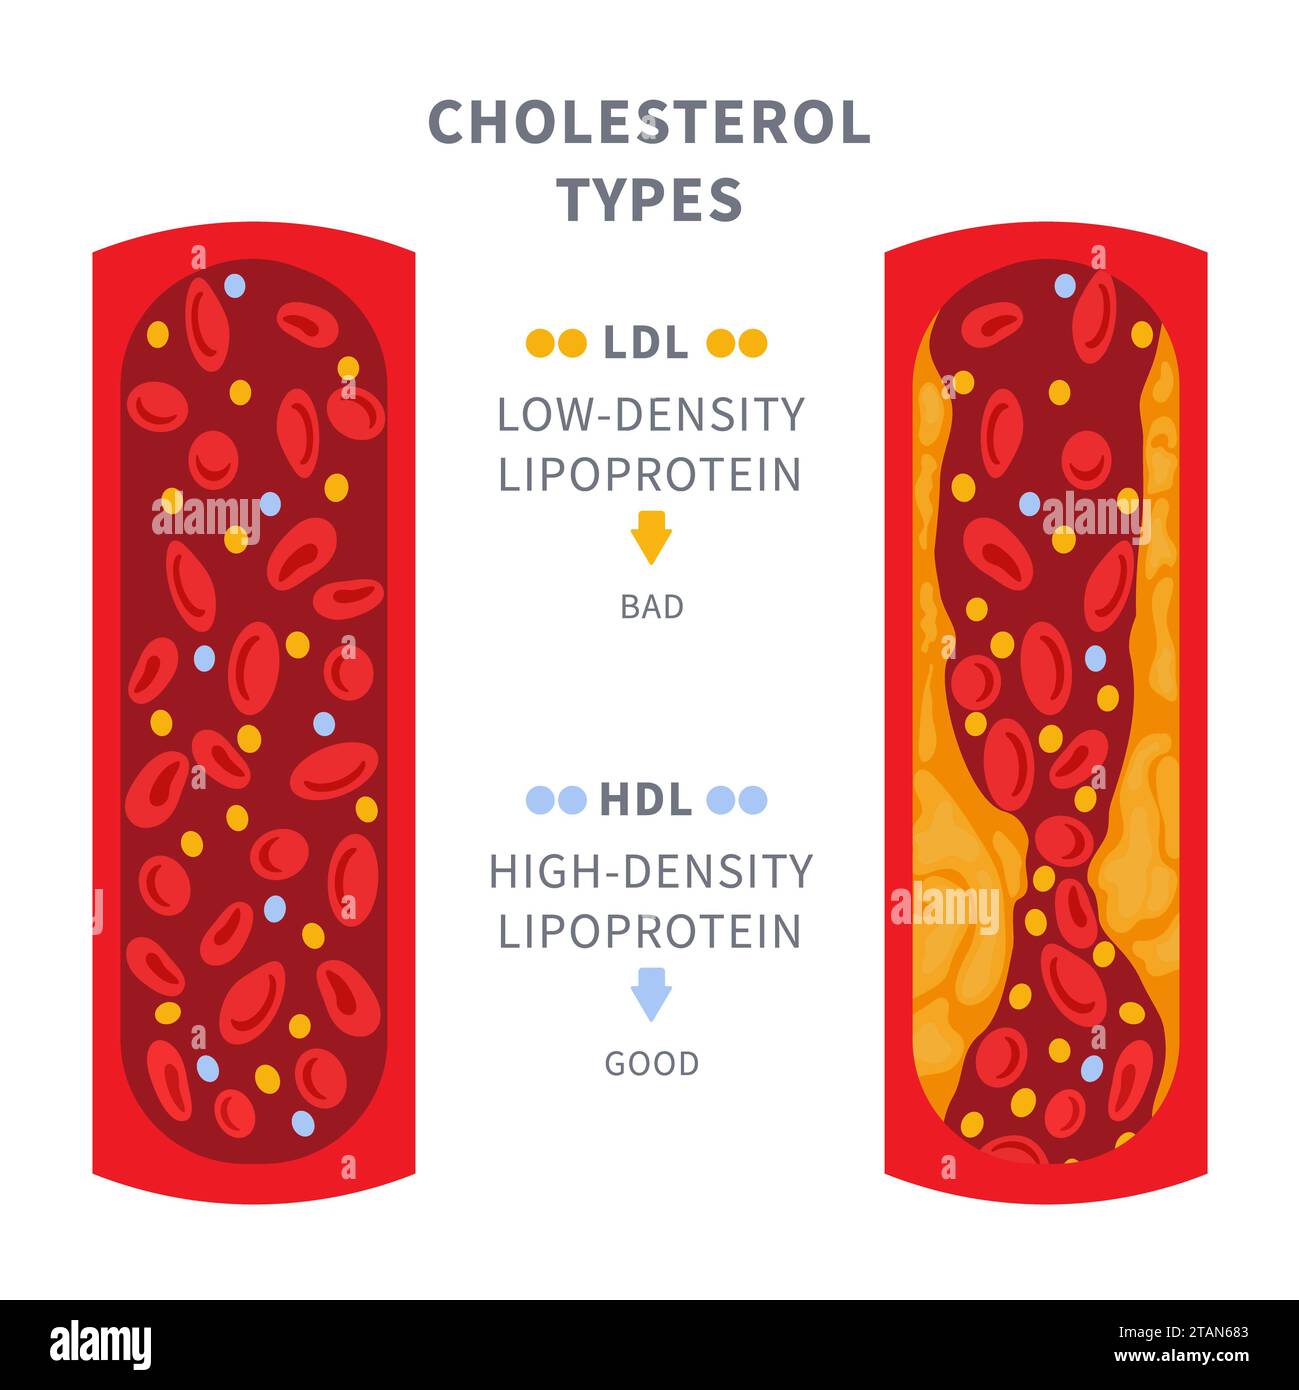 Cholesterinspiegel, konzeptuelle Darstellung Stockfoto